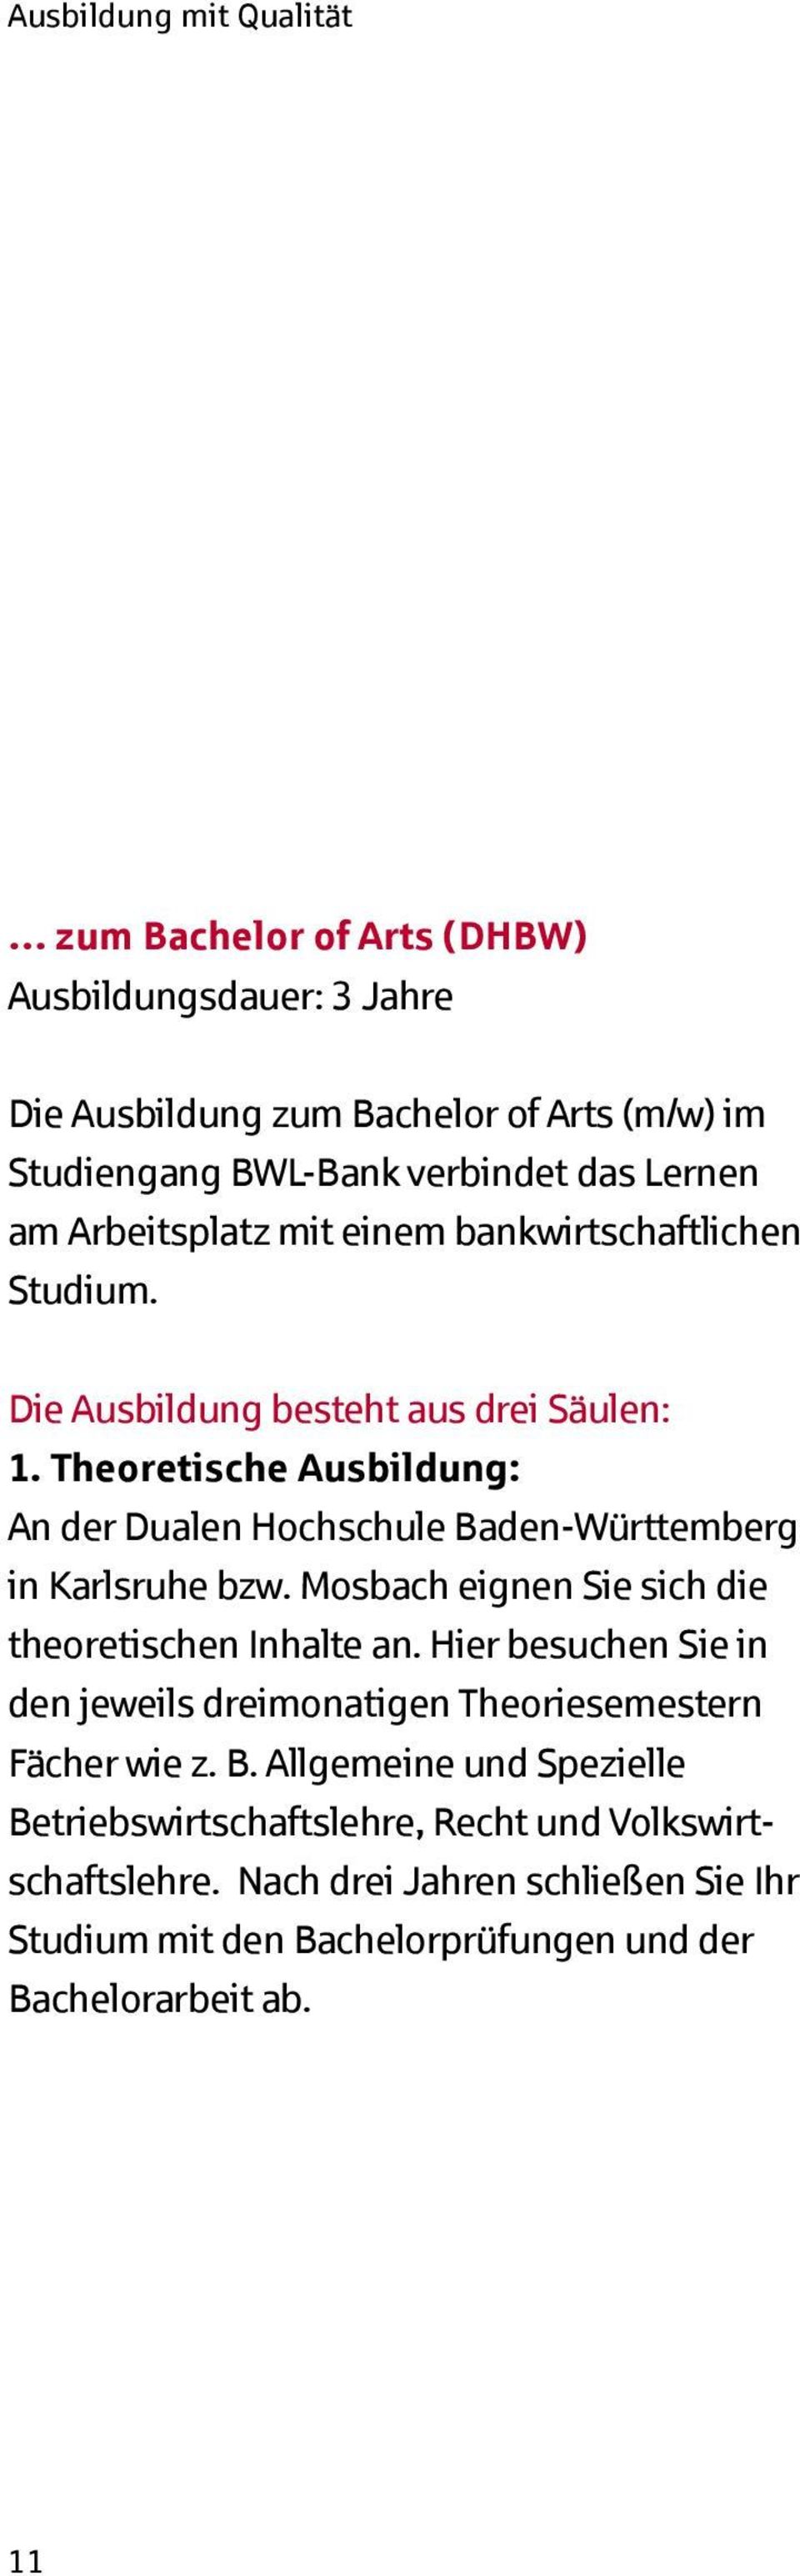 Theoretische Ausbildung: An der Dualen Hochschule Baden-Württemberg in Karlsruhe bzw. Mosbach eignen Sie sich die theoretischen Inhalte an.